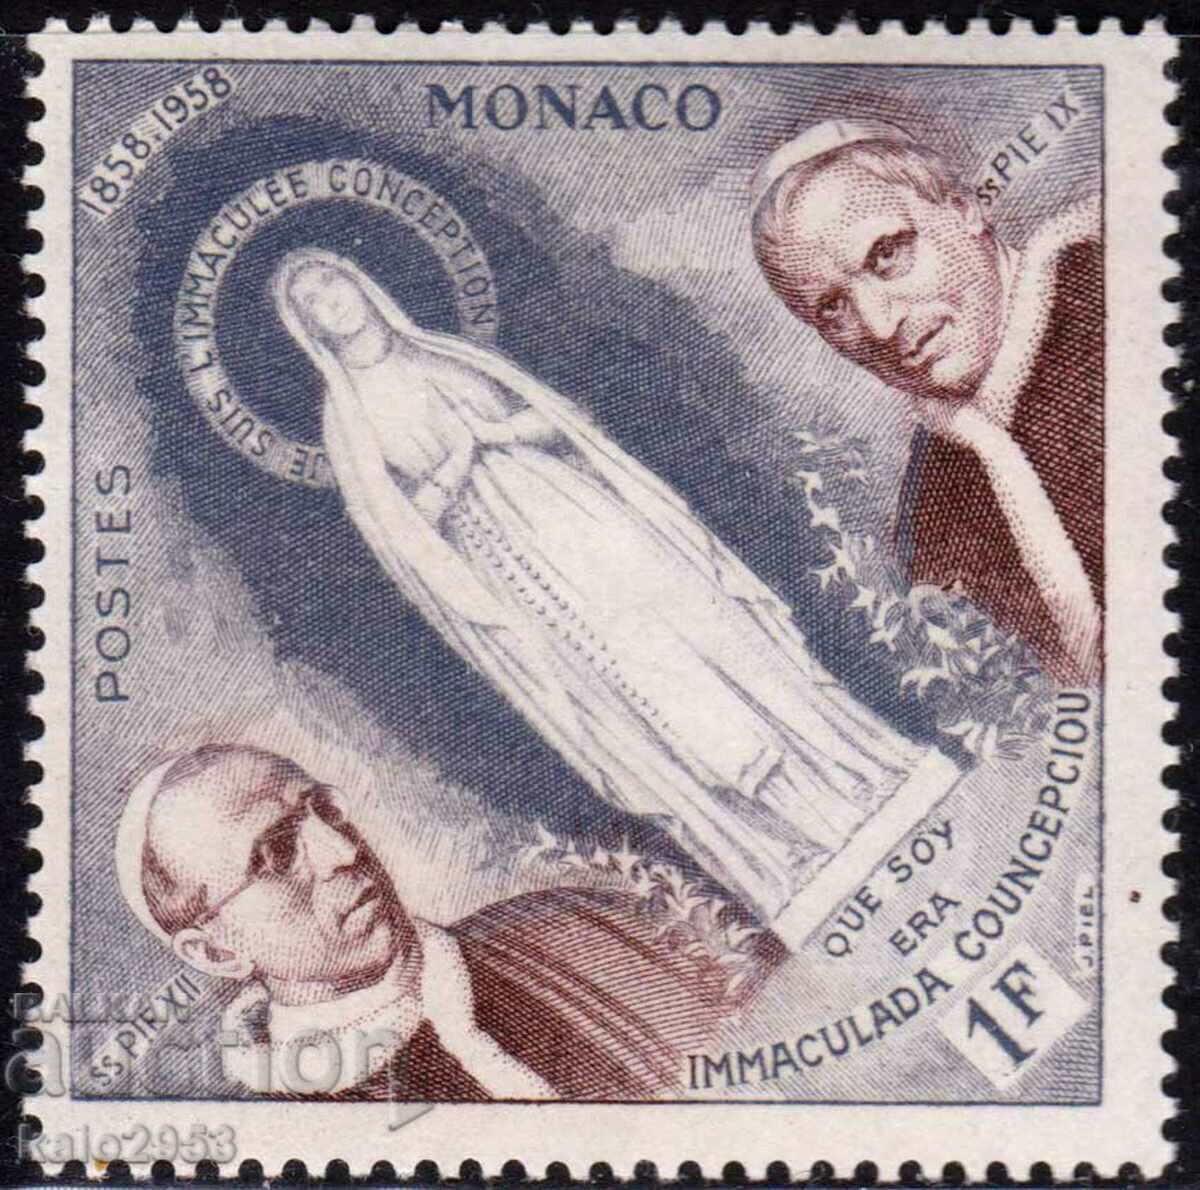 Μονακό-1958-Θρησκευτικό Ιωβηλαίο, MLH